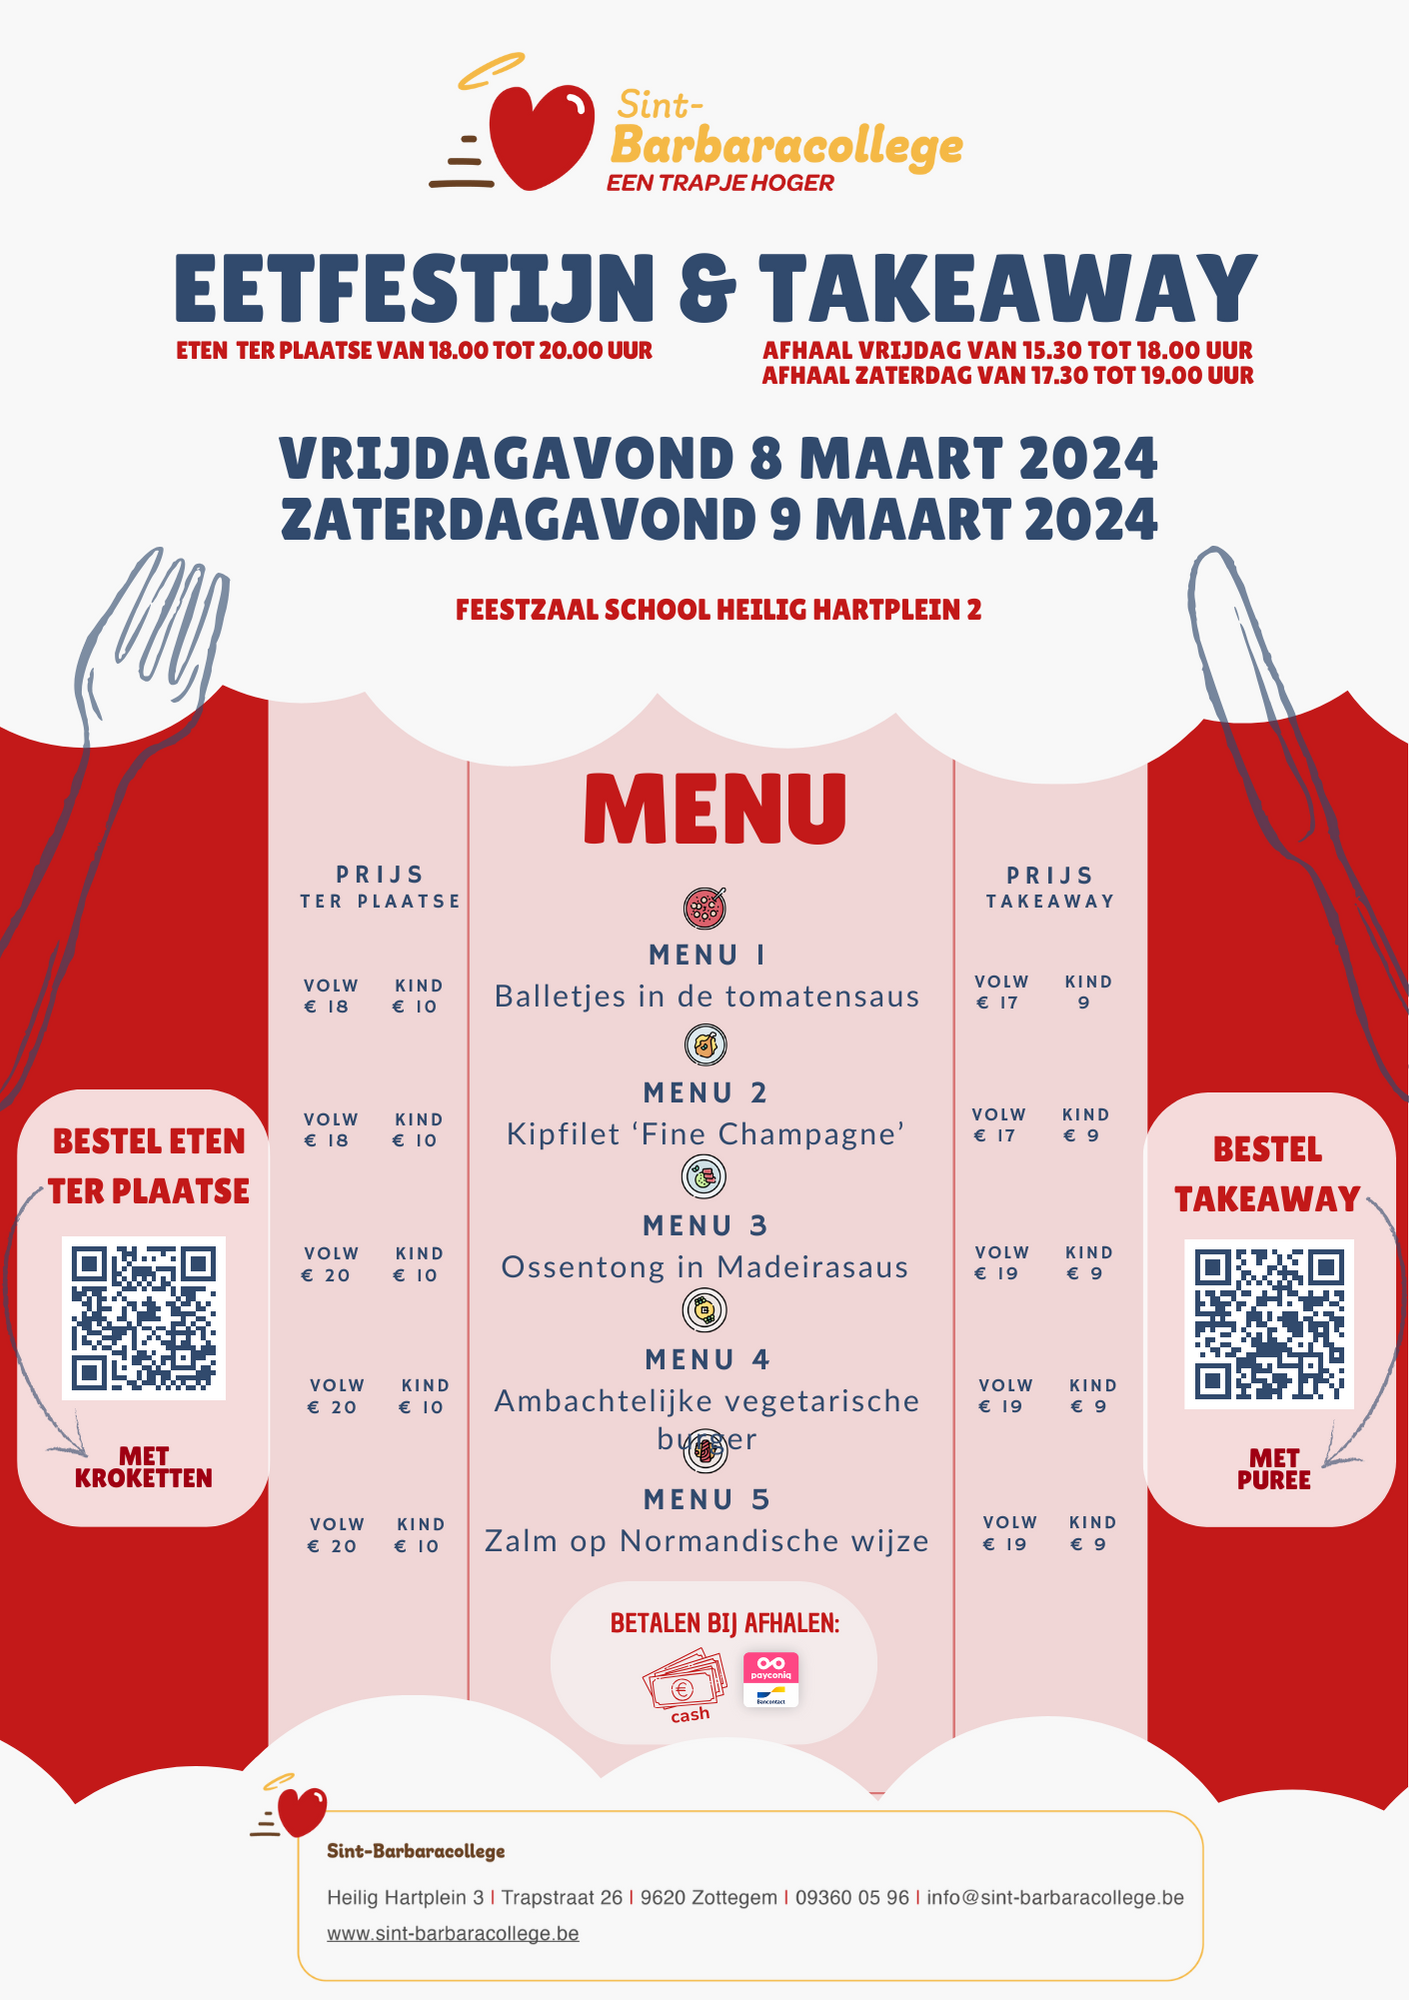 Eetfestijn & takeaway 2024